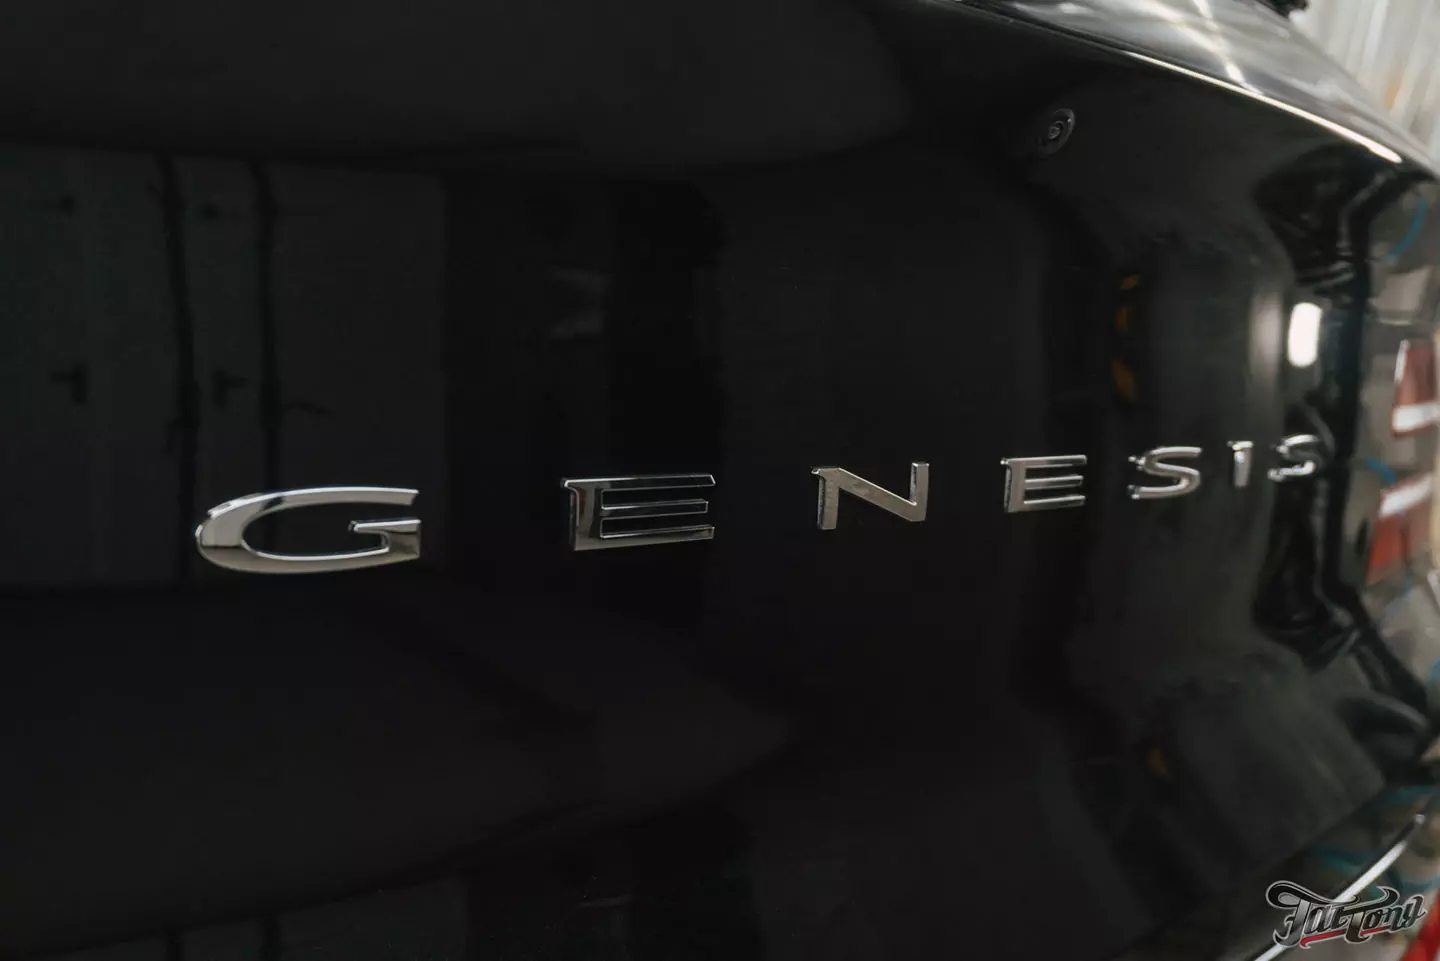 Оклейка Genesis GV80 в глянцевый полиуретан и антихром экстерьера